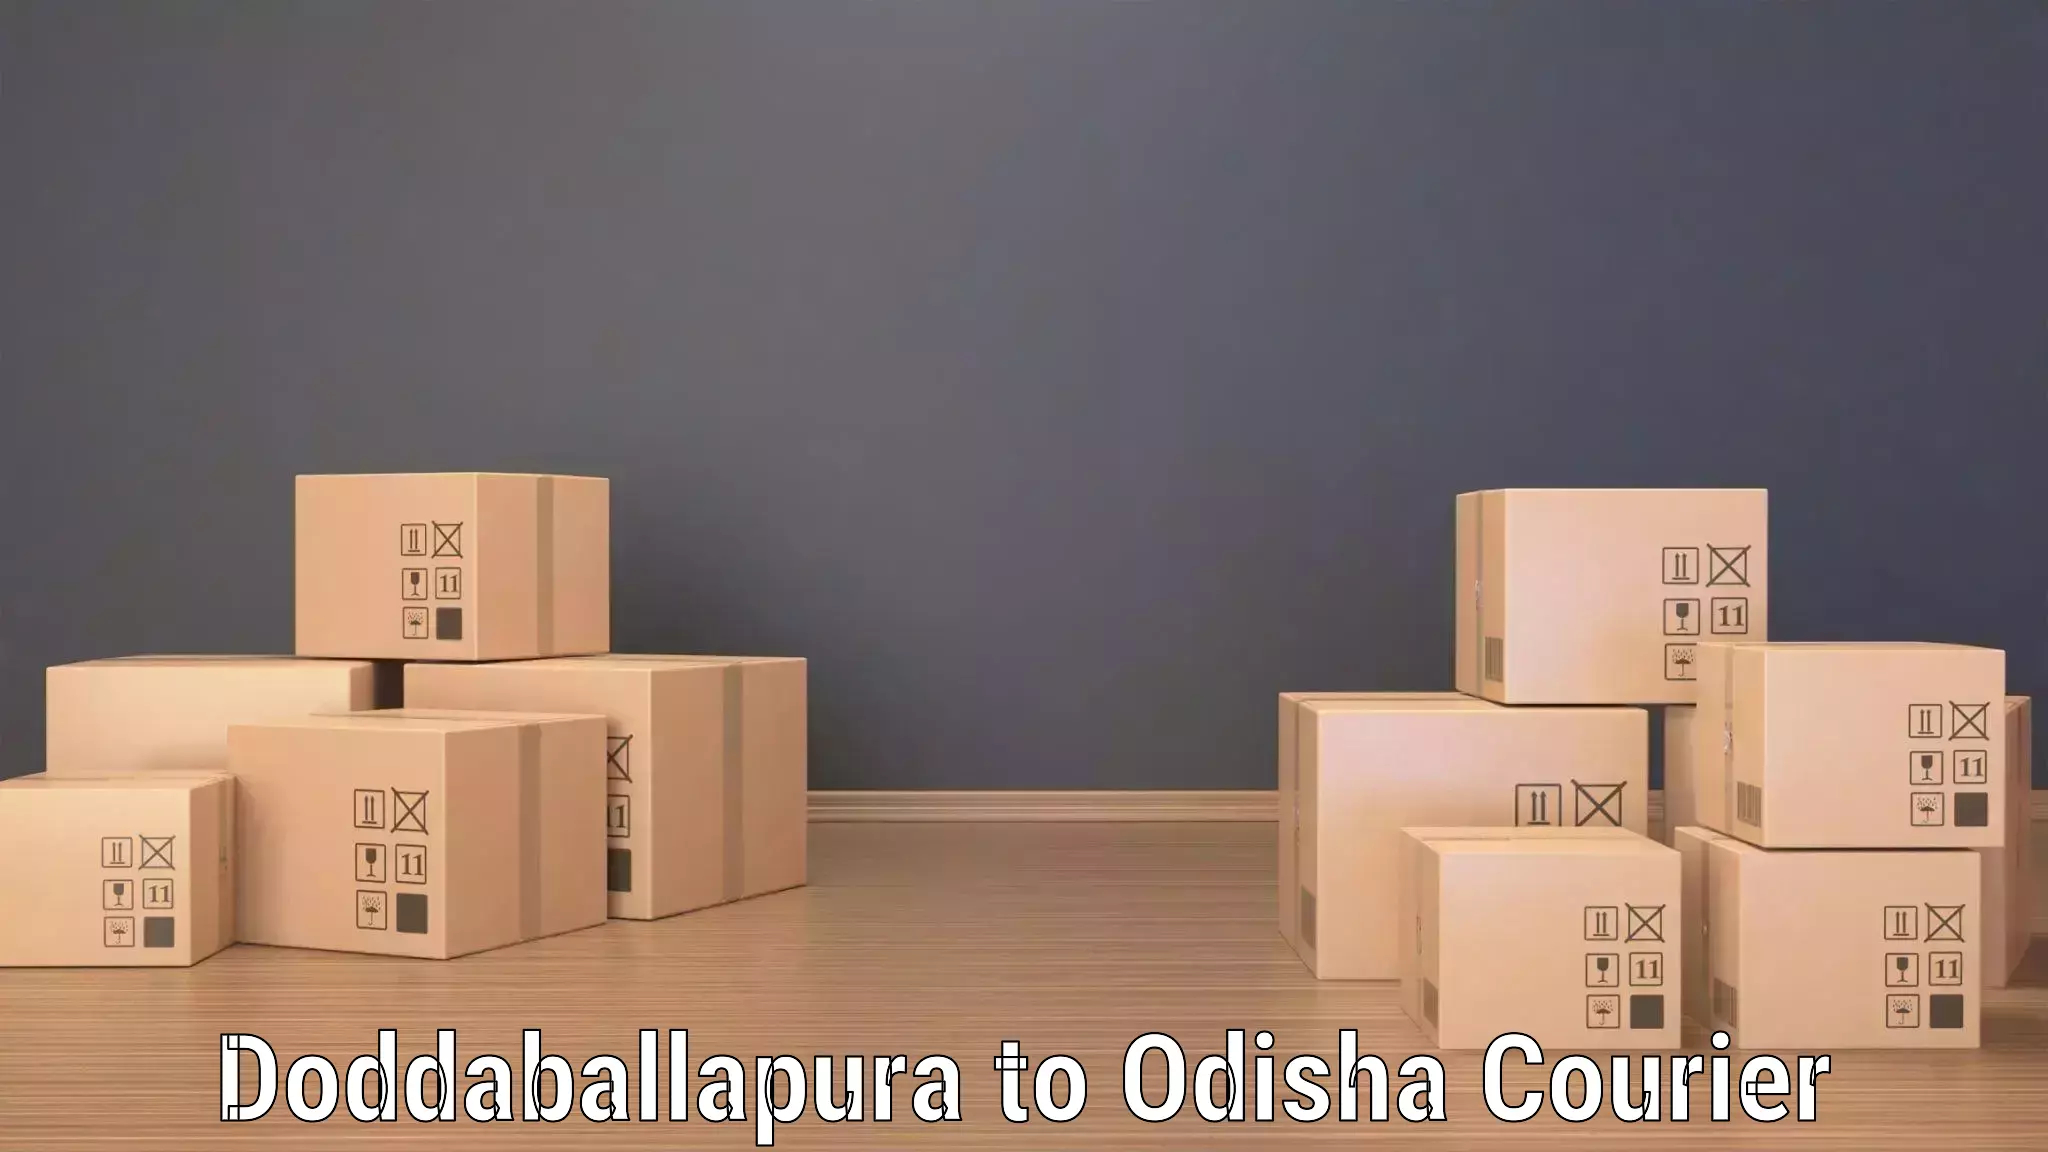 Large package courier Doddaballapura to Khaprakhol